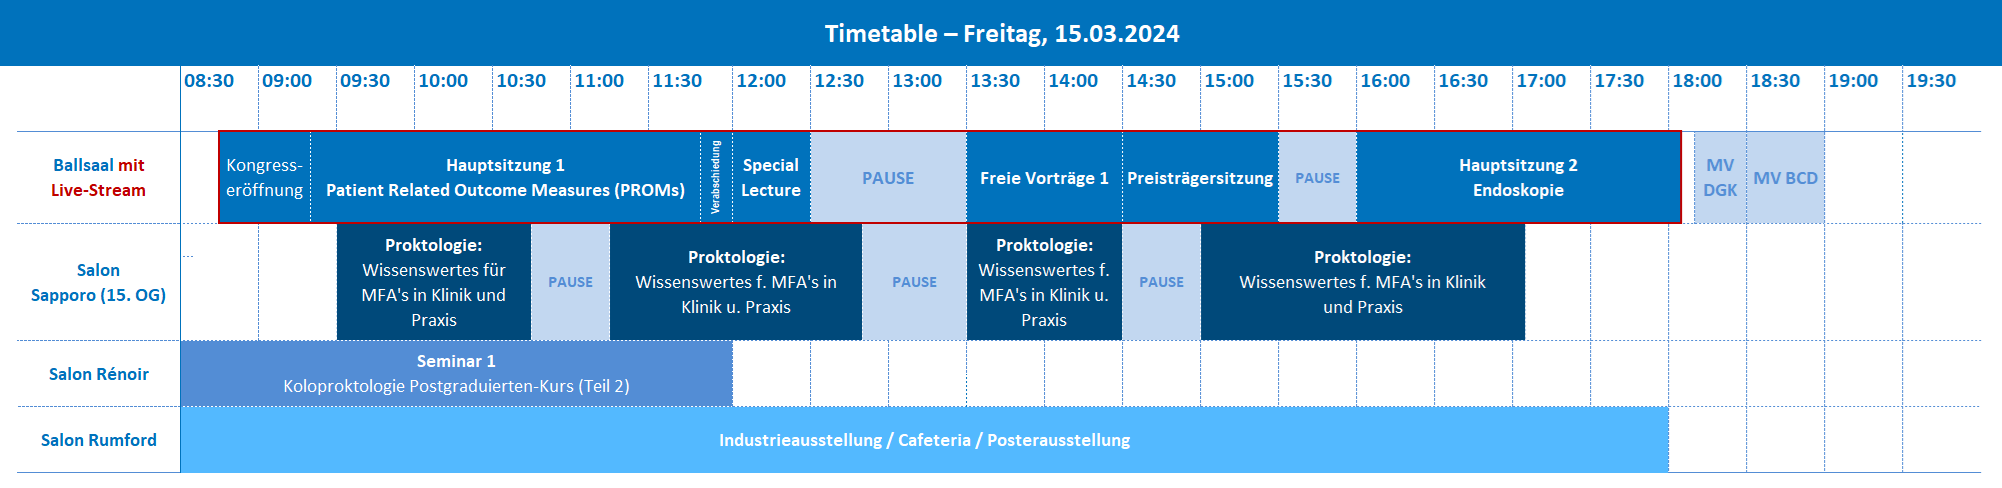 DGK2024 Timetable Freitag